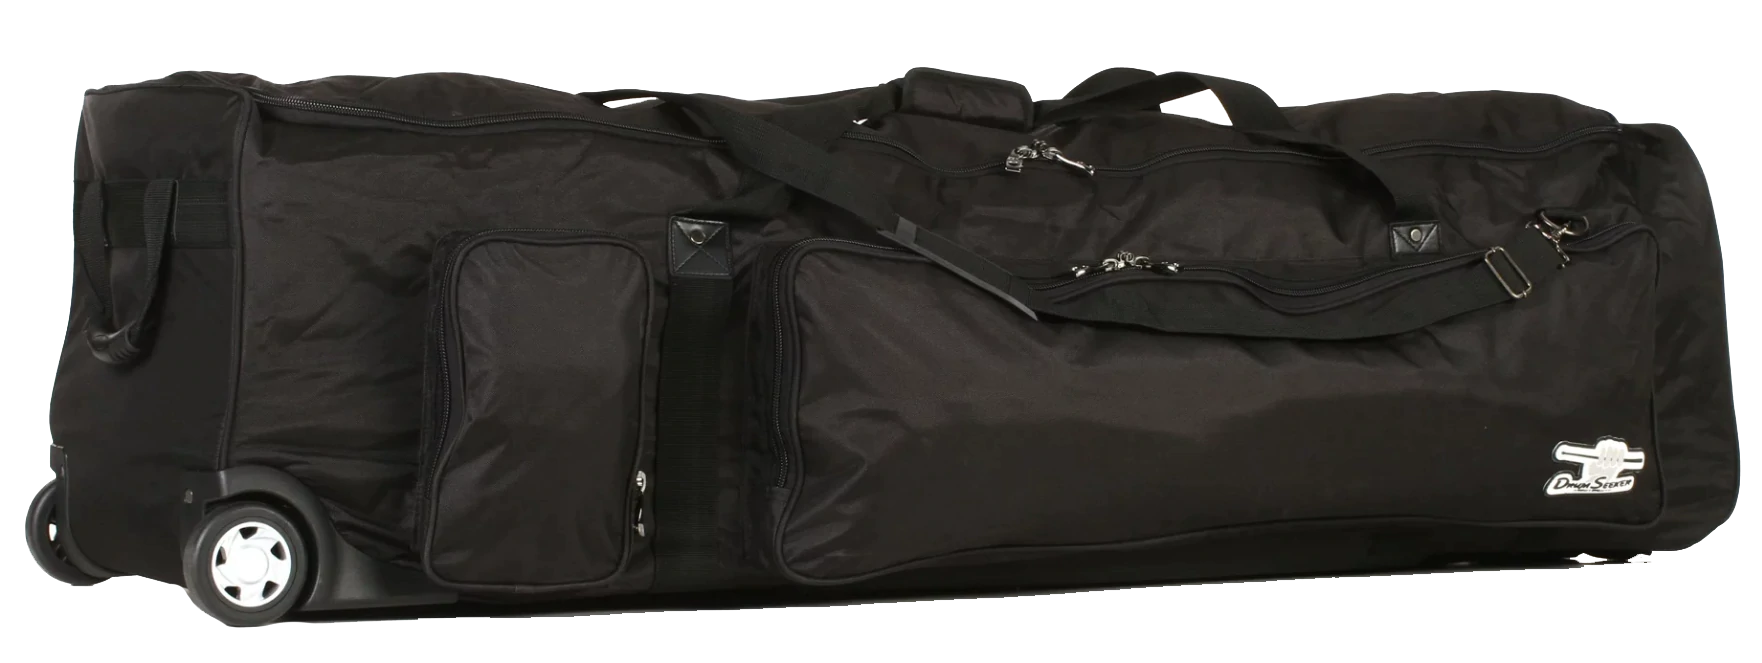 H&B Drum Seeker 30.5 x 14.5 Inches Companion Tilt-N-Pull Bag